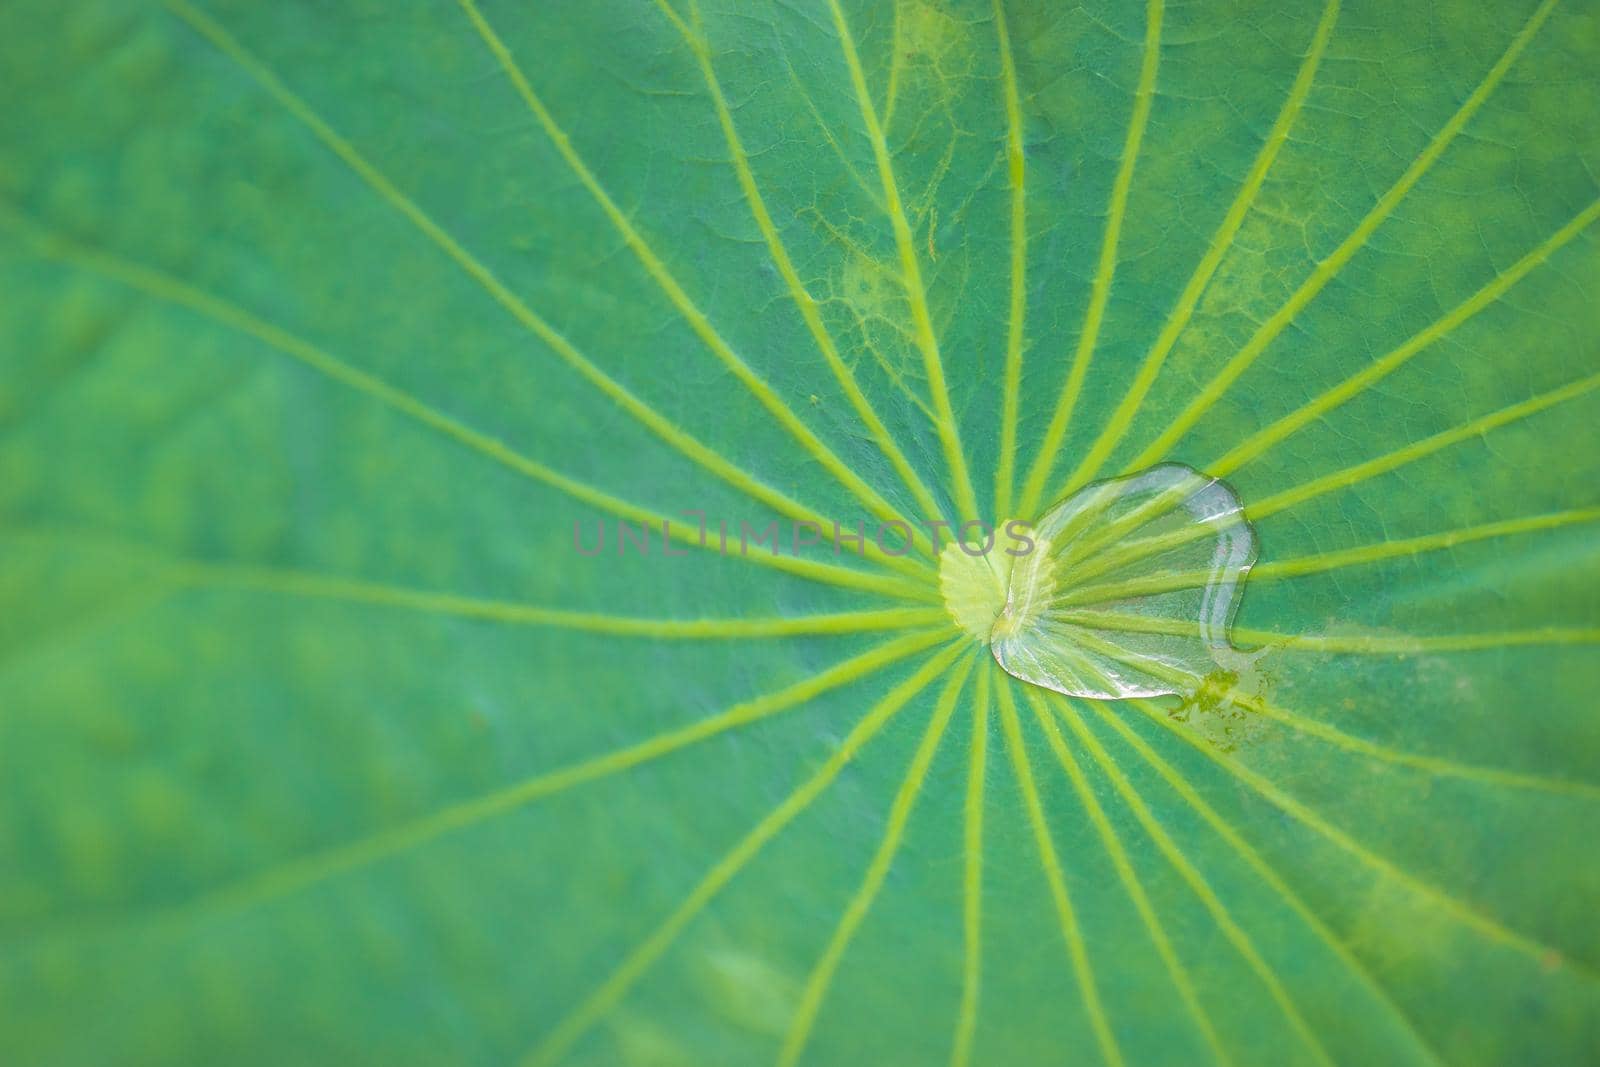 water drop on lotus leaf by domonite